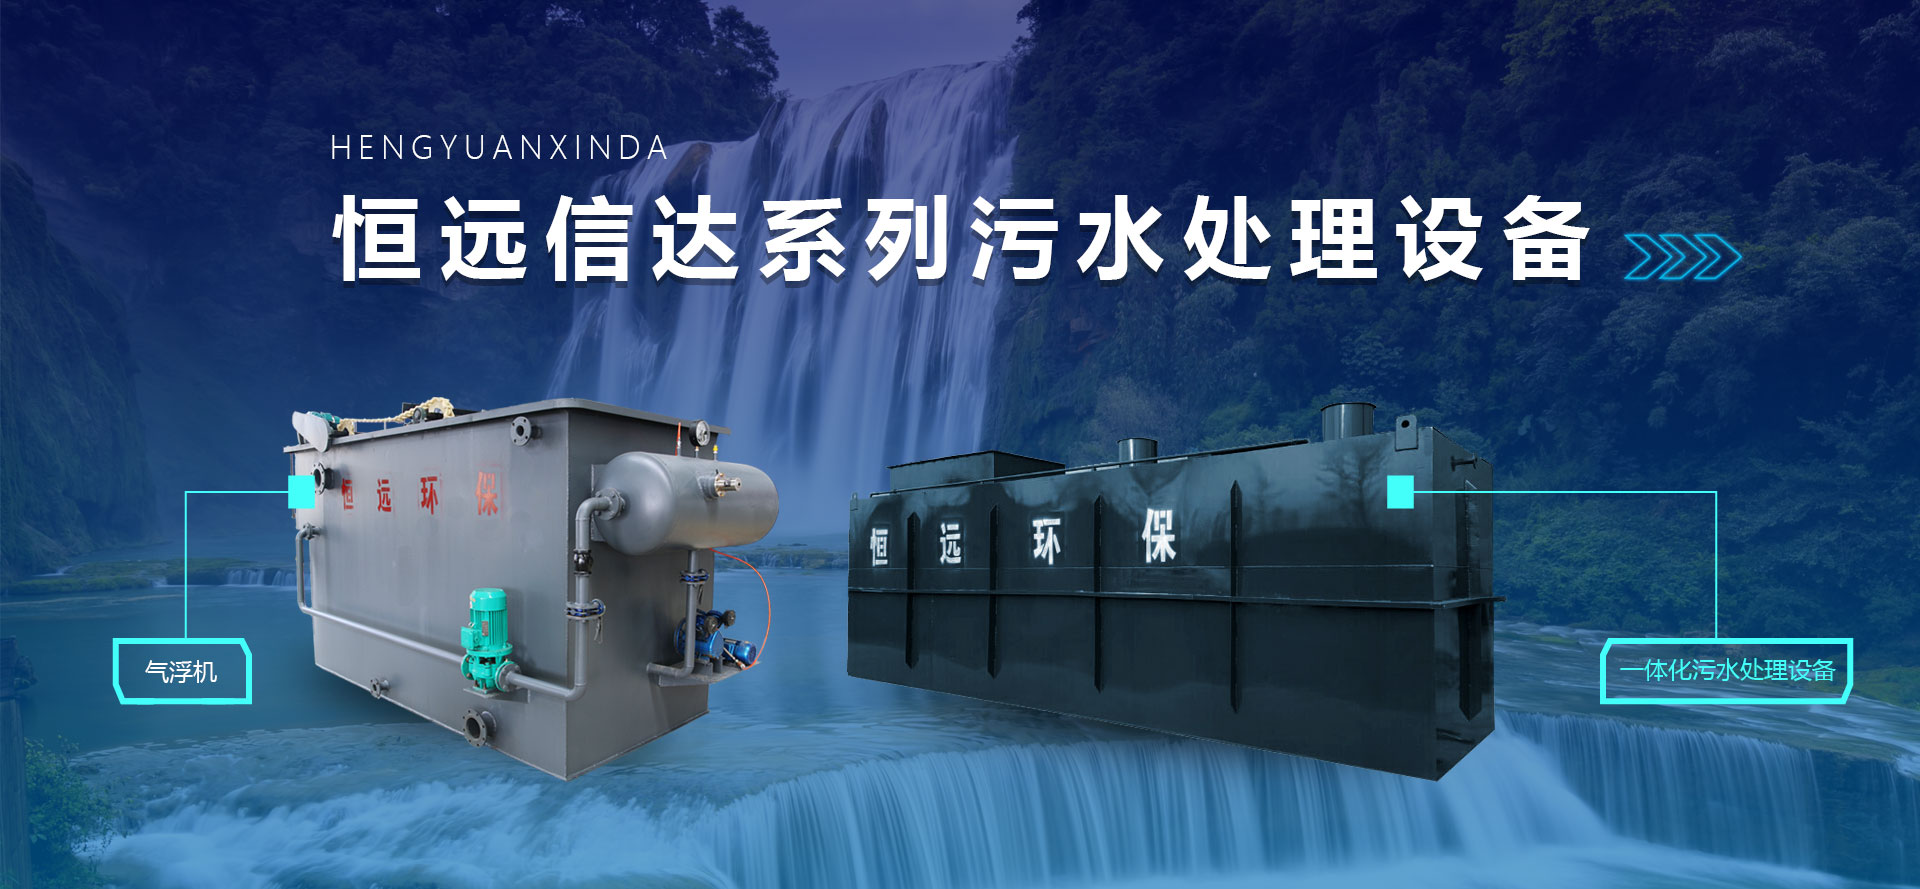 潍坊博天堂918官网环保水处理设备有限公司